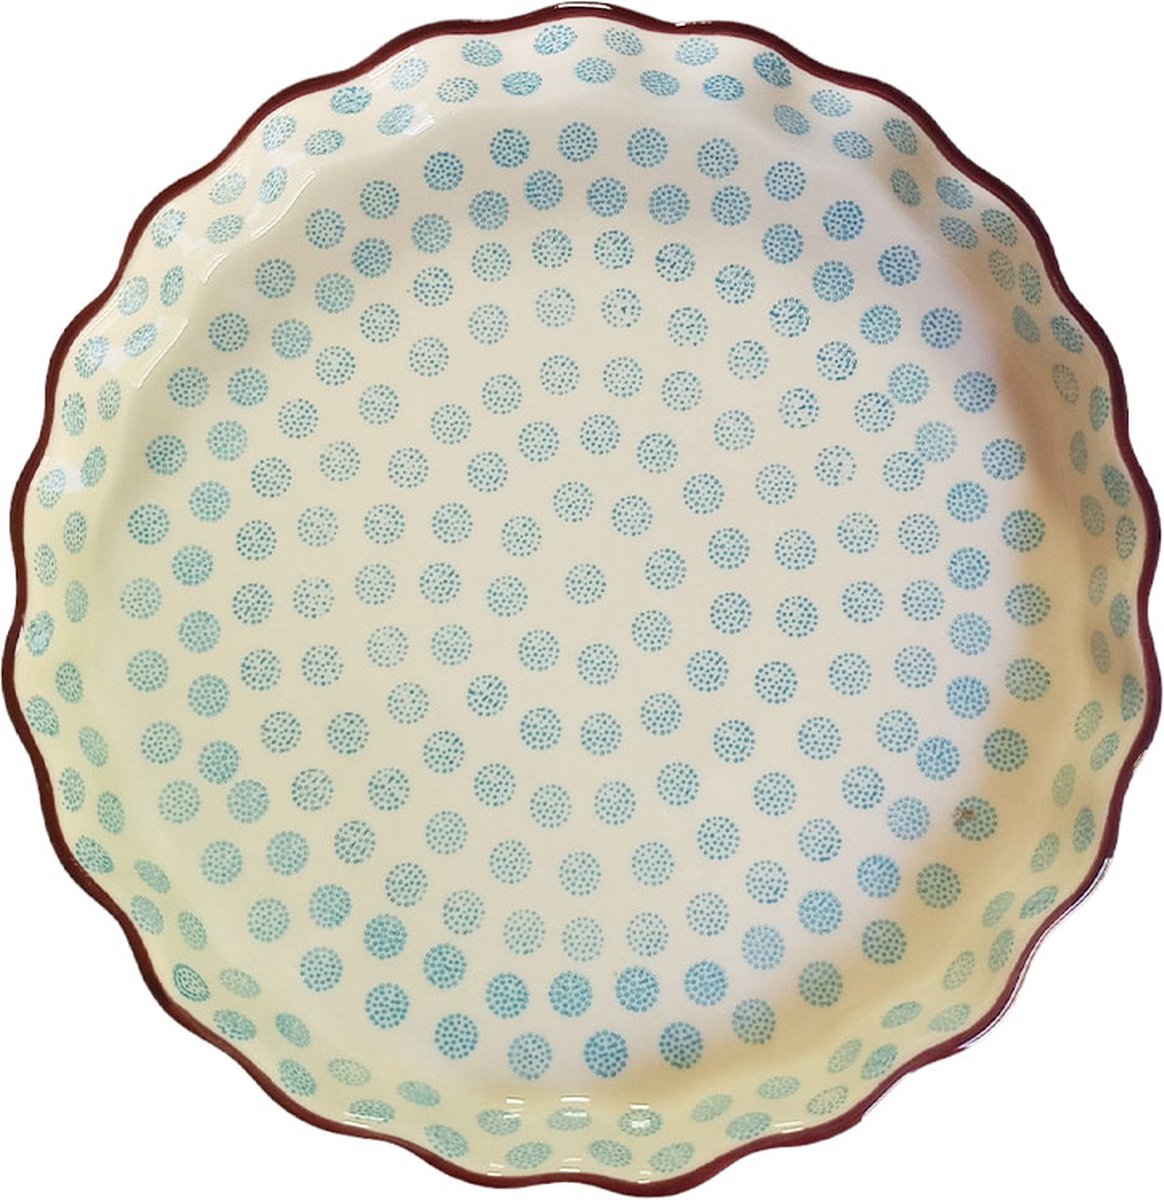 Floz Design aardewerk quichevorm - taartvorm van steen - blauw patroon - 27 cm - fairtrade